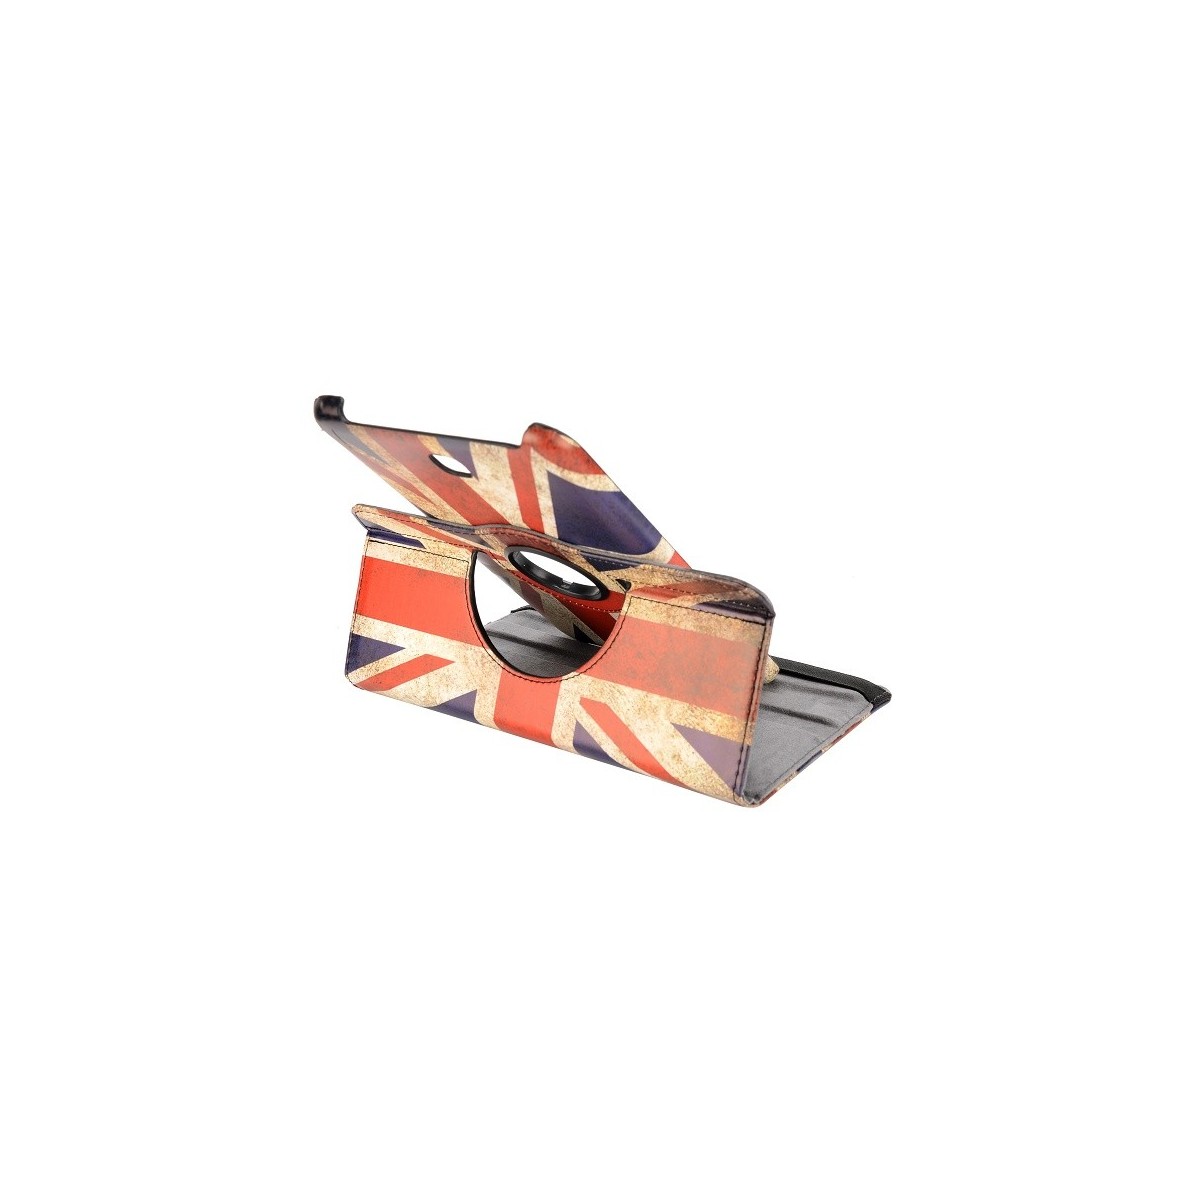 Etui Galaxy Tab 4 8.0 rotatif 360° drapeau UK